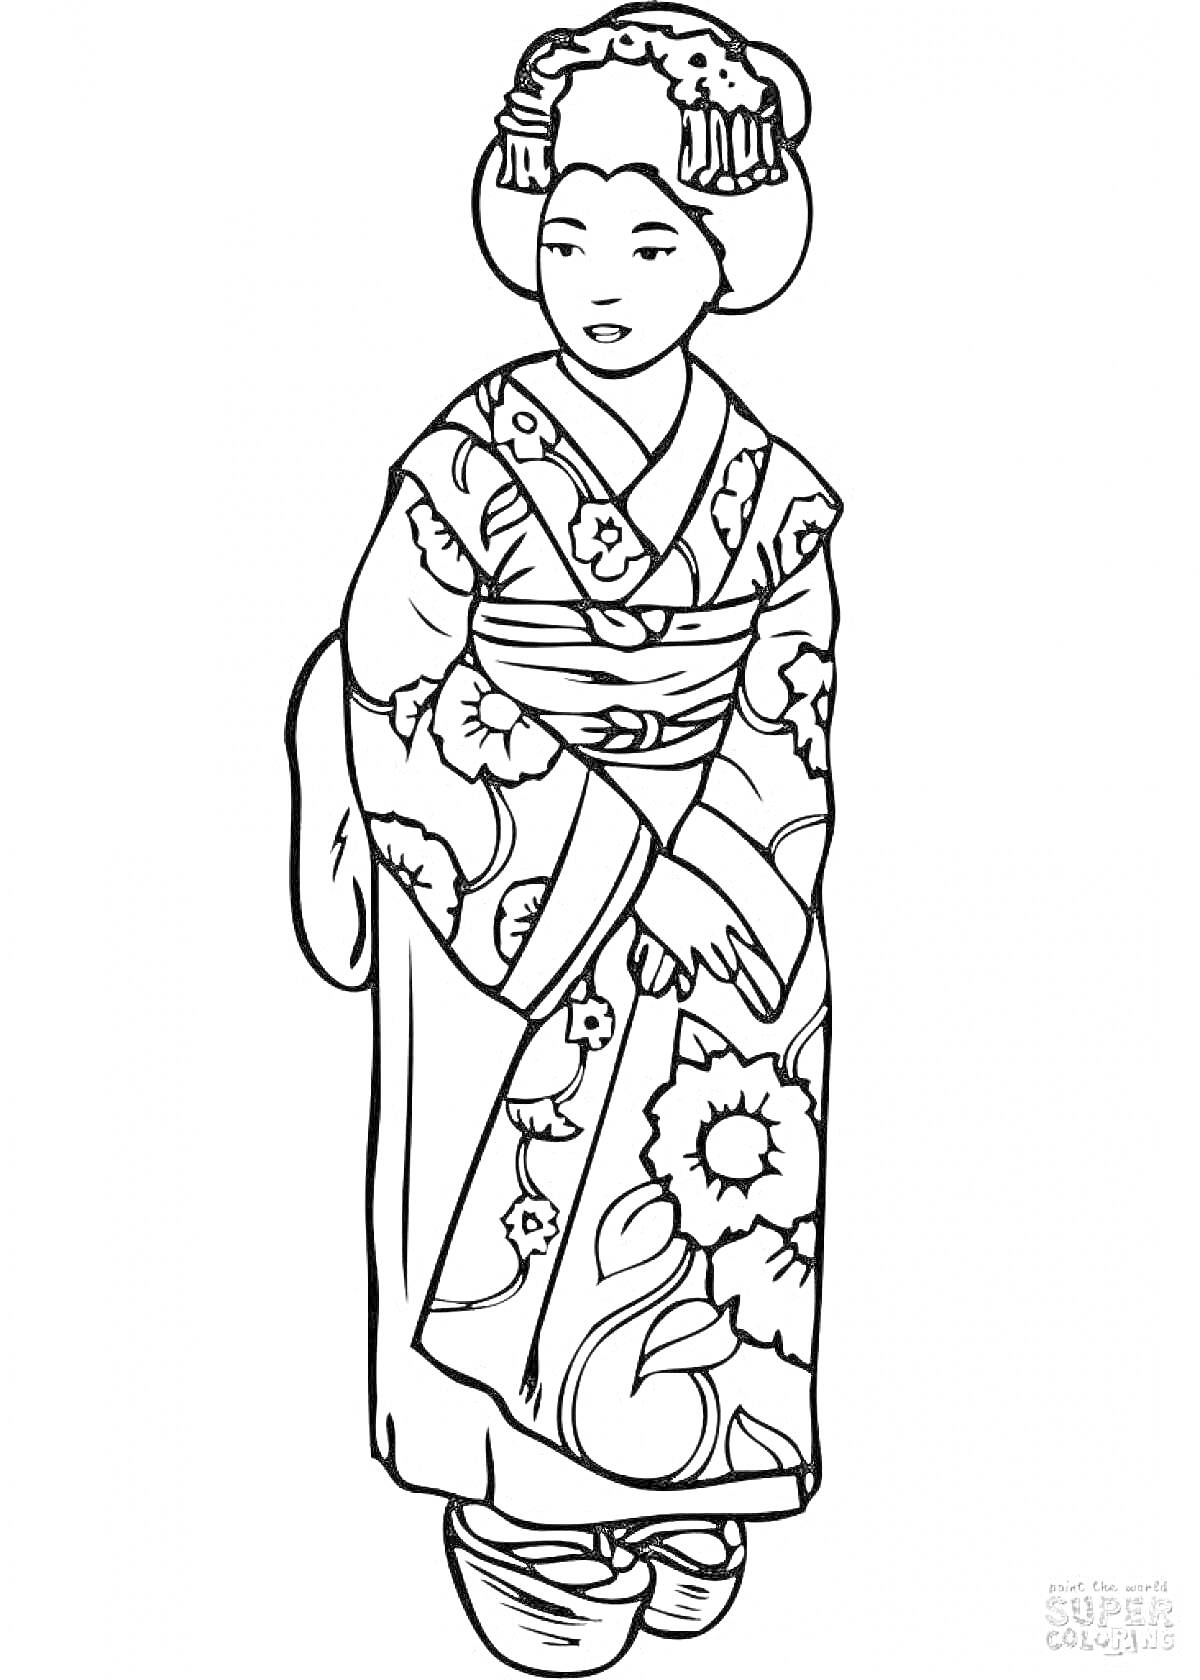 Раскраска японка в традиционном кимоно с узорами, прическа с украшениями, пояс оби, традиционная обувь гэта